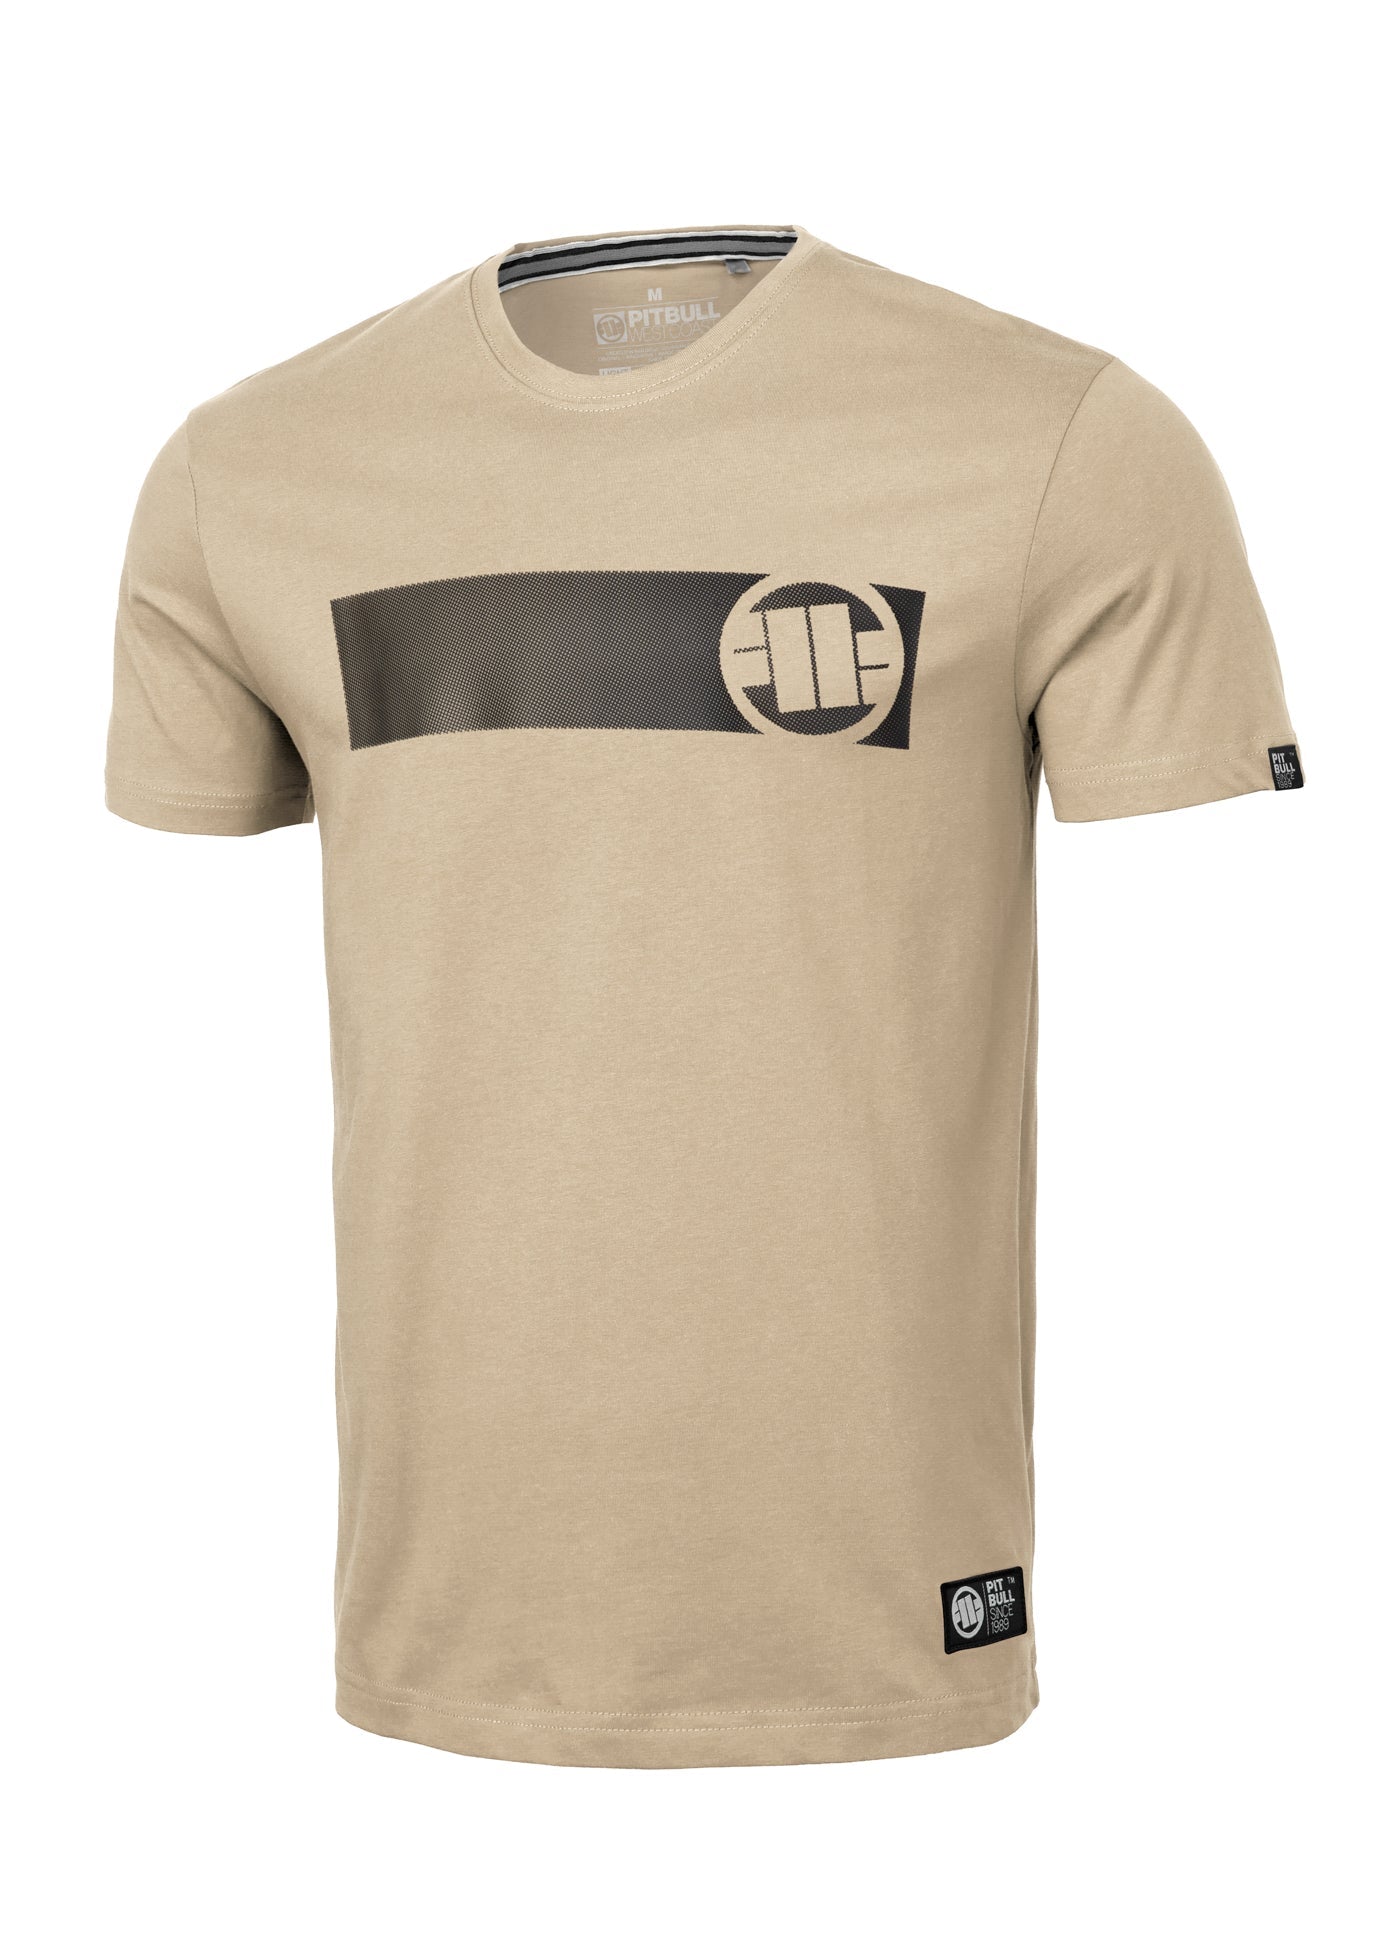 CASINO 3 Lightweight Sand T-shirt - Pitbullstore.eu